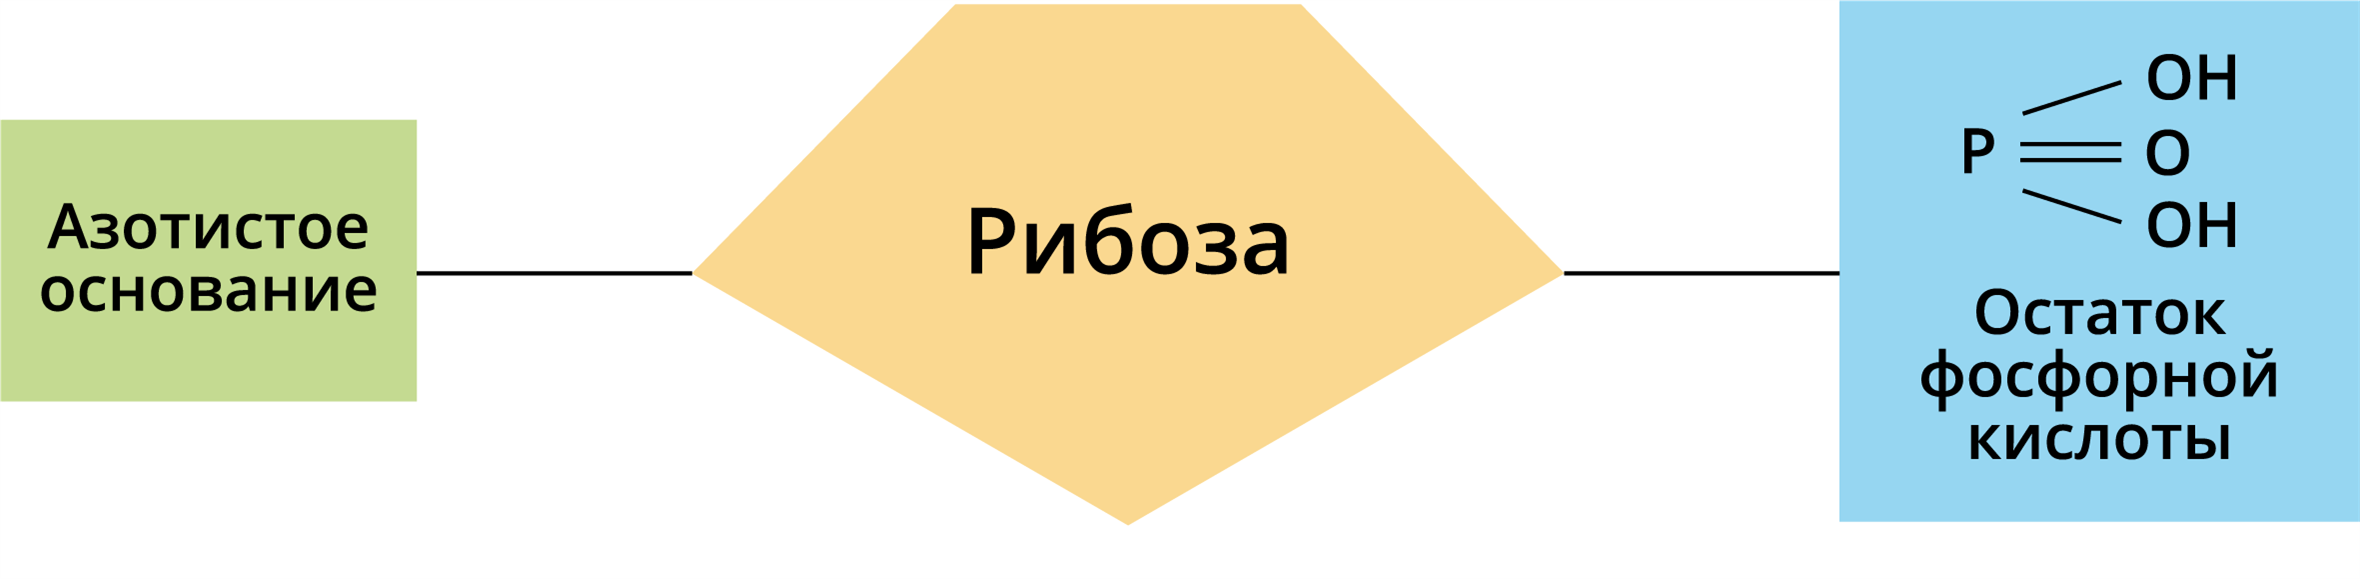 Схема азотистое основание рибоза остаток фосфорной кислоты. Азотистое основание рибоза остаток фосфорной кислоты. Азотистое основание рибоза остаток фосфорной. Остаток фосфорной кислоты рибоза.